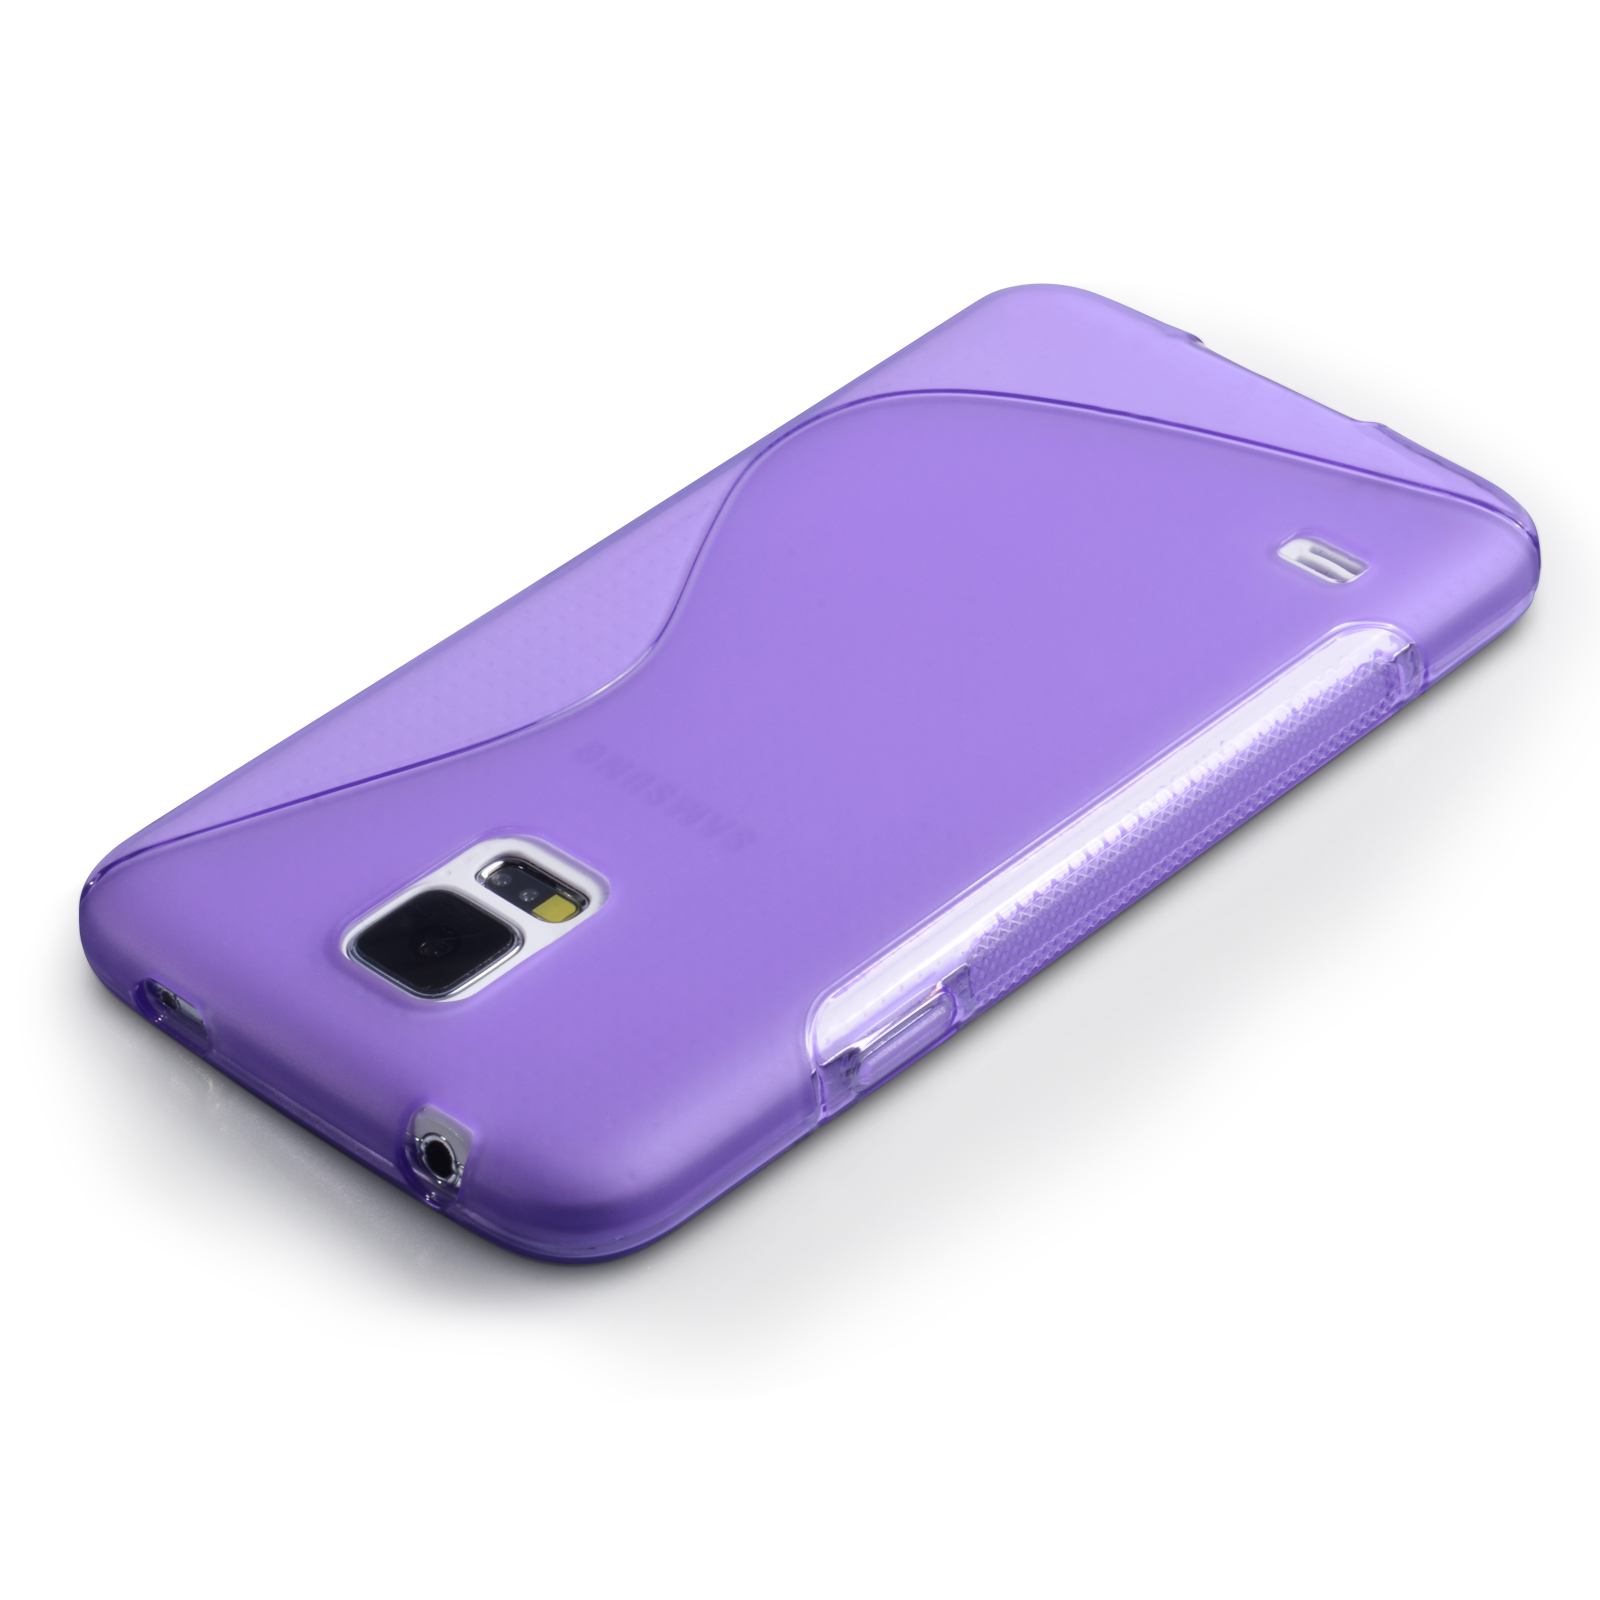 Caseflex Samsung Galaxy S5 Silicone Gel S-Line Case - Purple